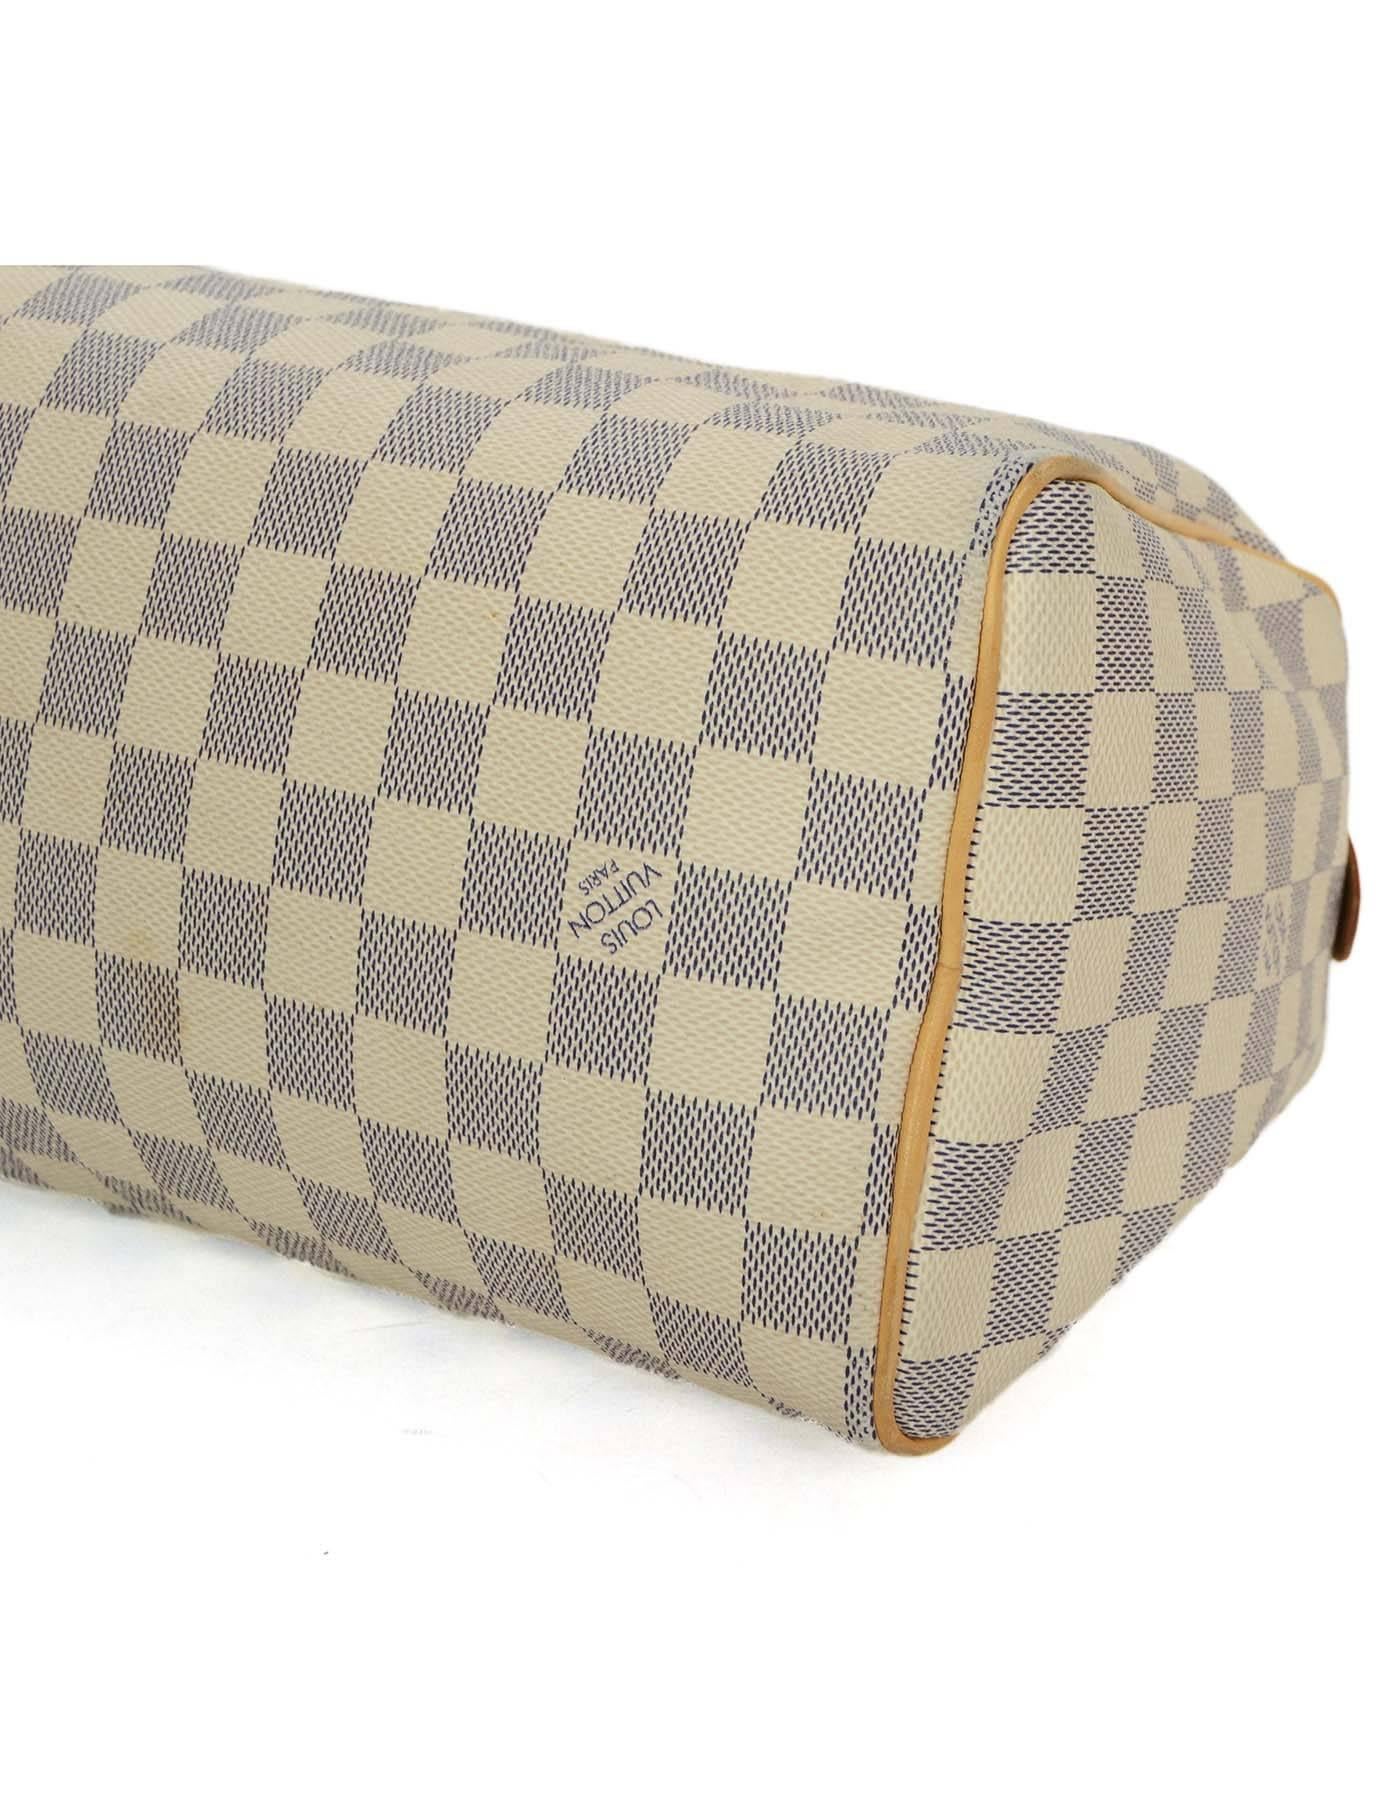 Louis Vuitton Damier Azur Speedy 25 Bag GHW 1